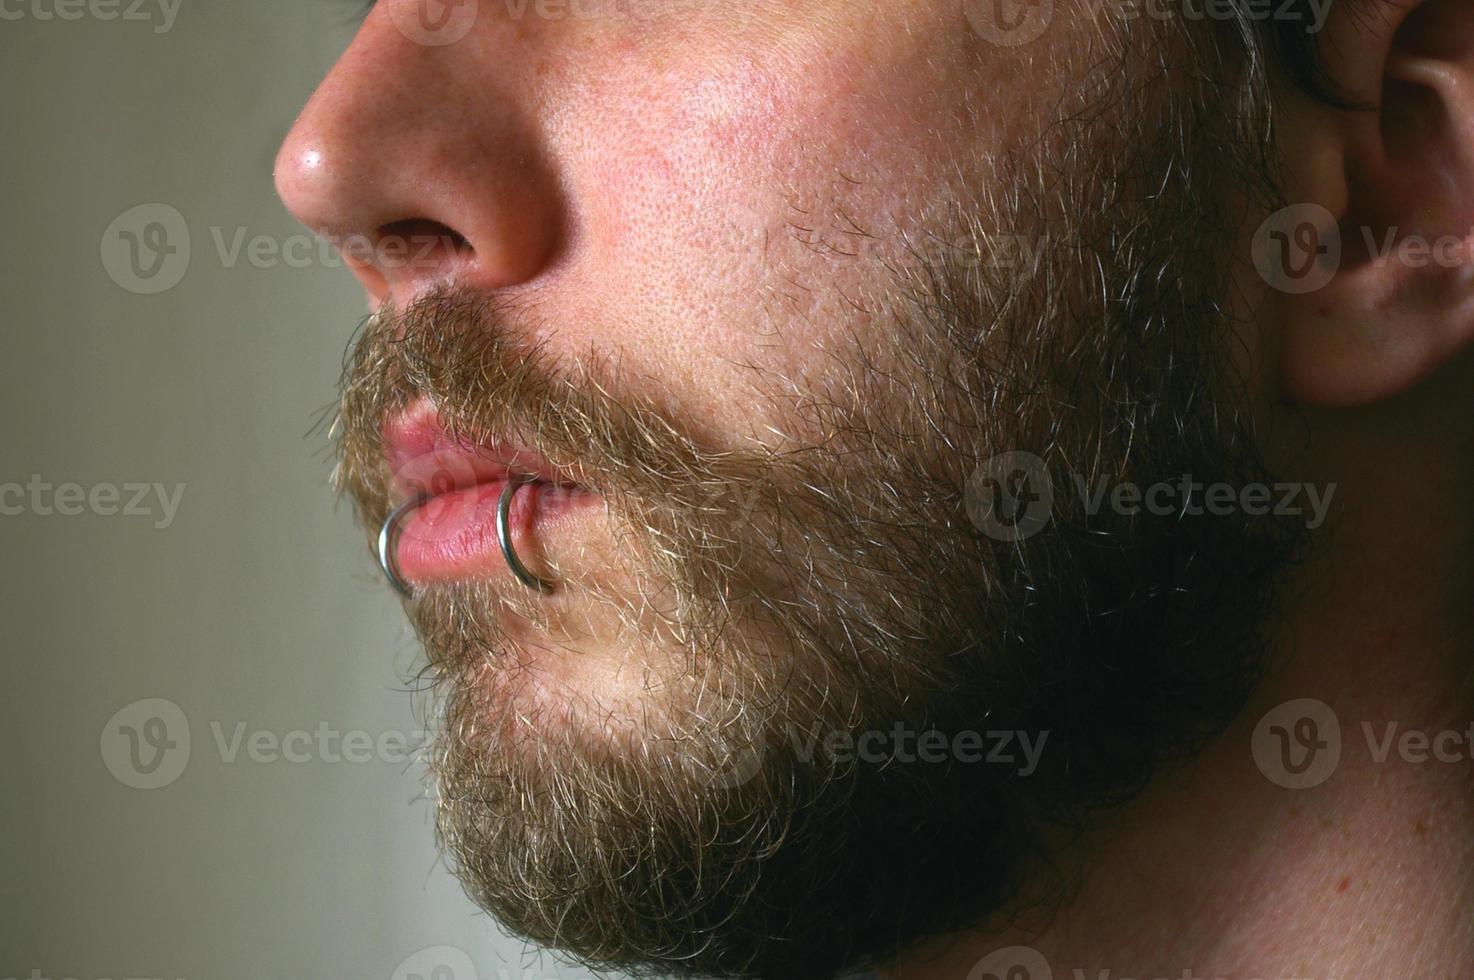 Vul in dwaas vernieuwen close up van man's gezicht met lip piercings 880371 Stockfoto